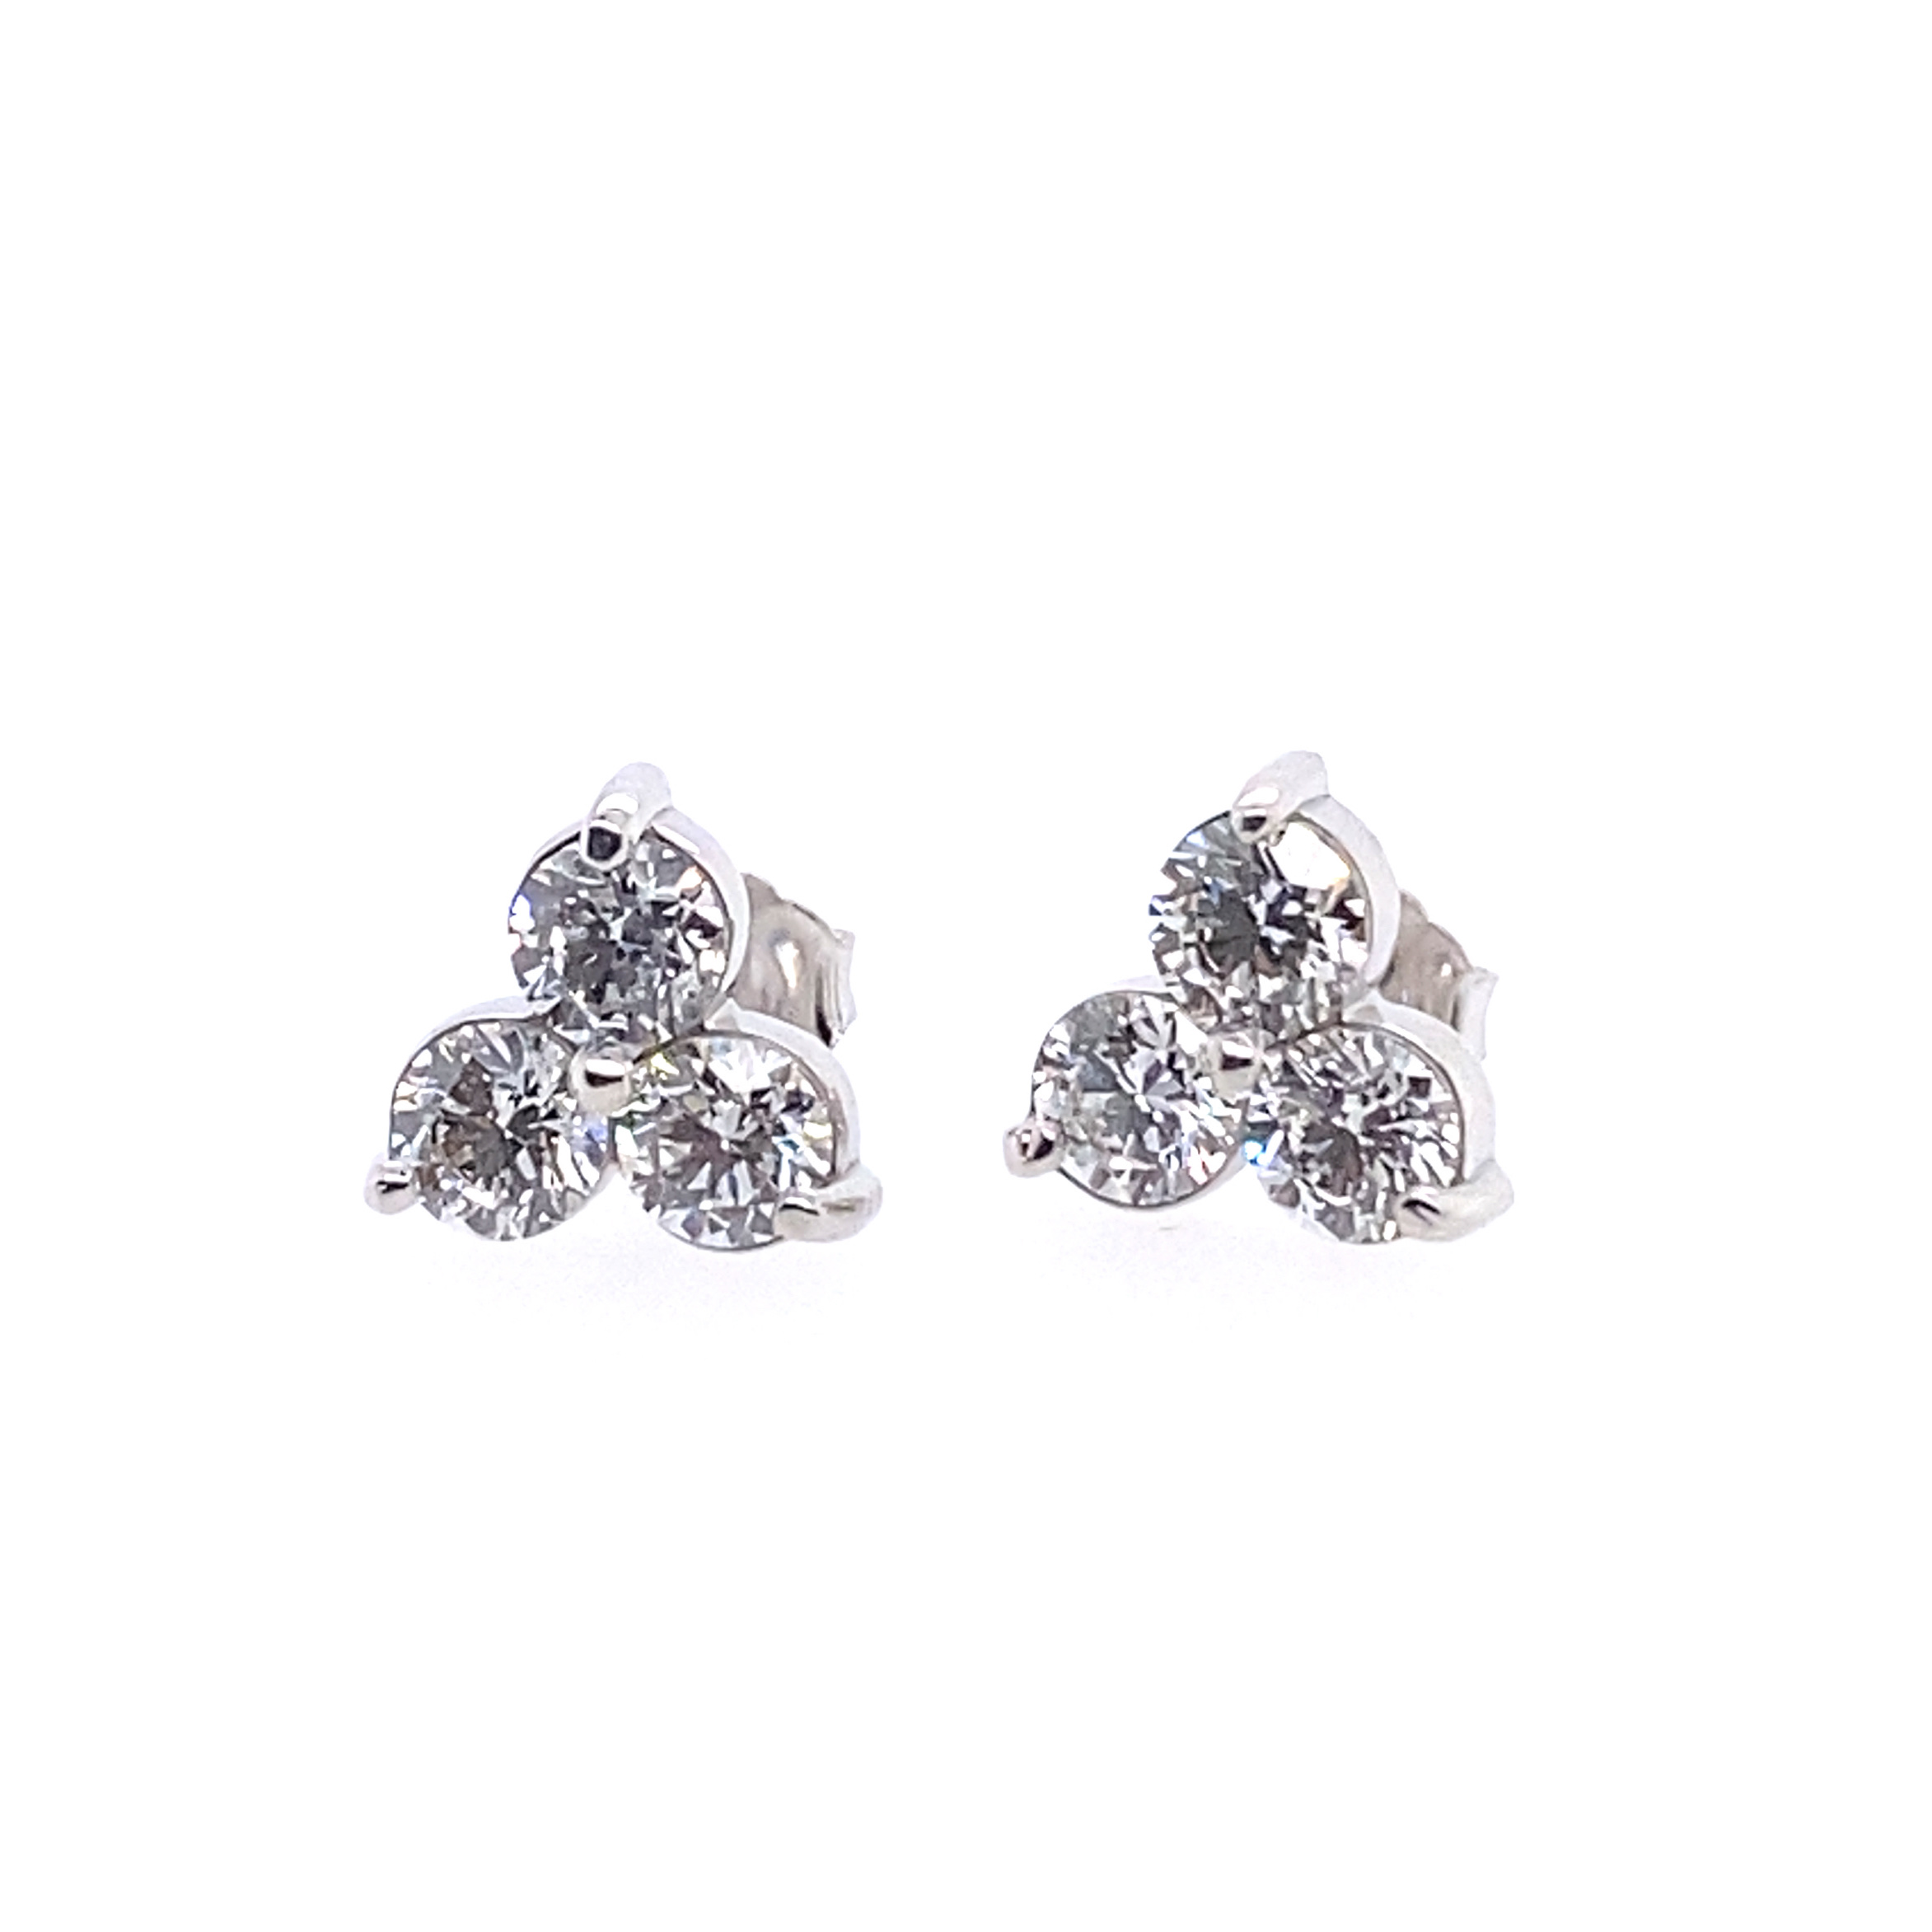 14k White Gold 2.09ctw 6 G Vs 4.4mm Round 3-stone Diamond Cluster Earrings (pair)